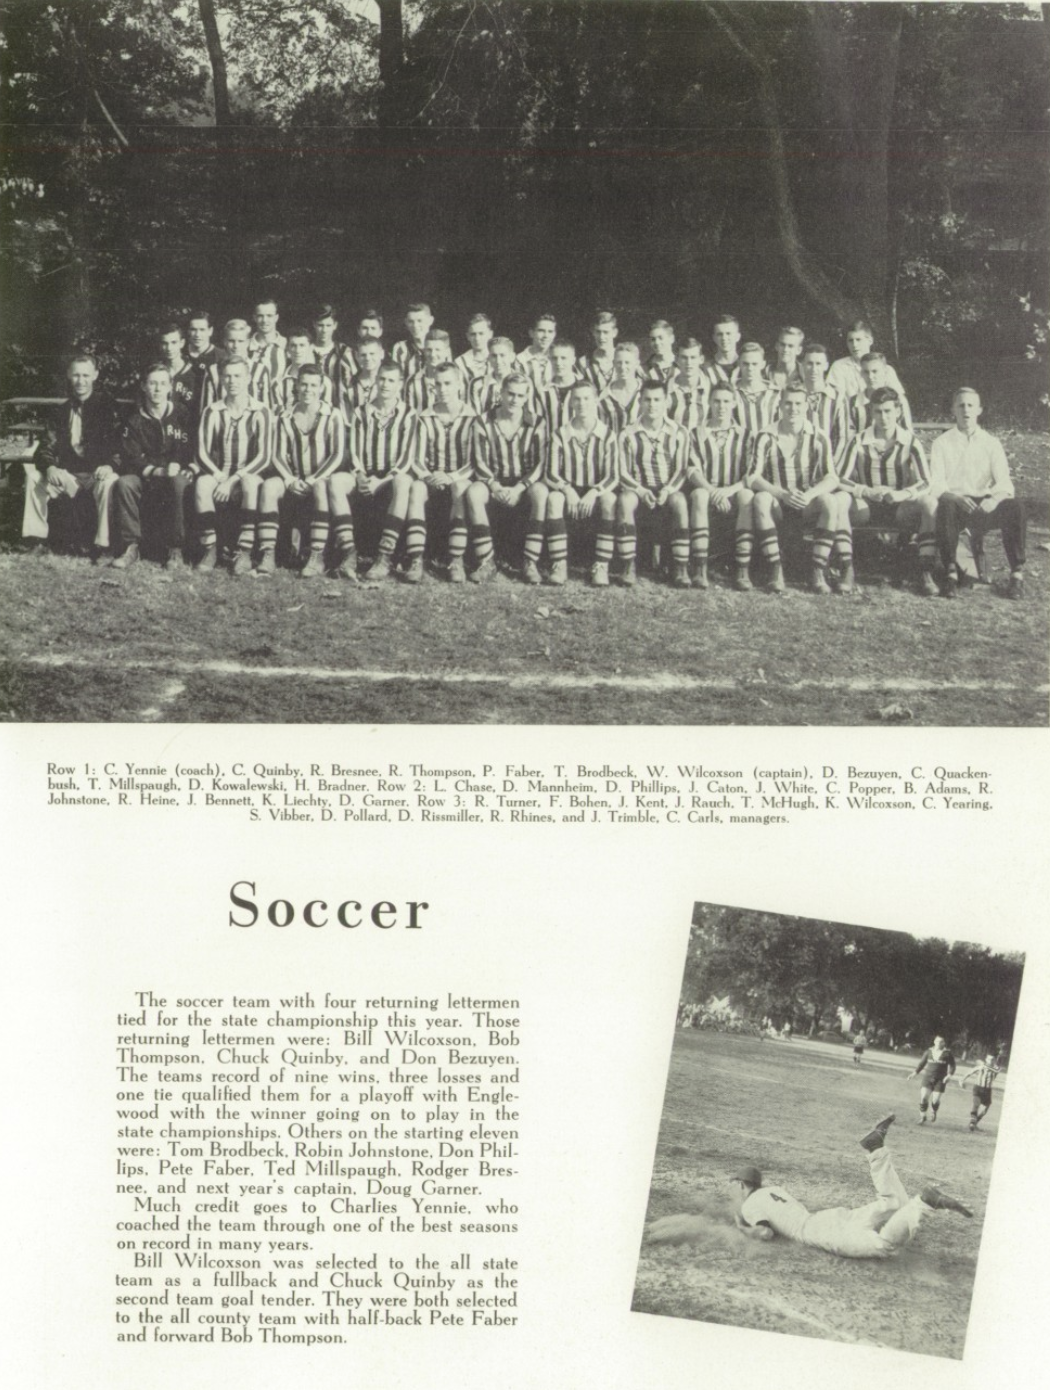 1953 Boys’ Soccer Team